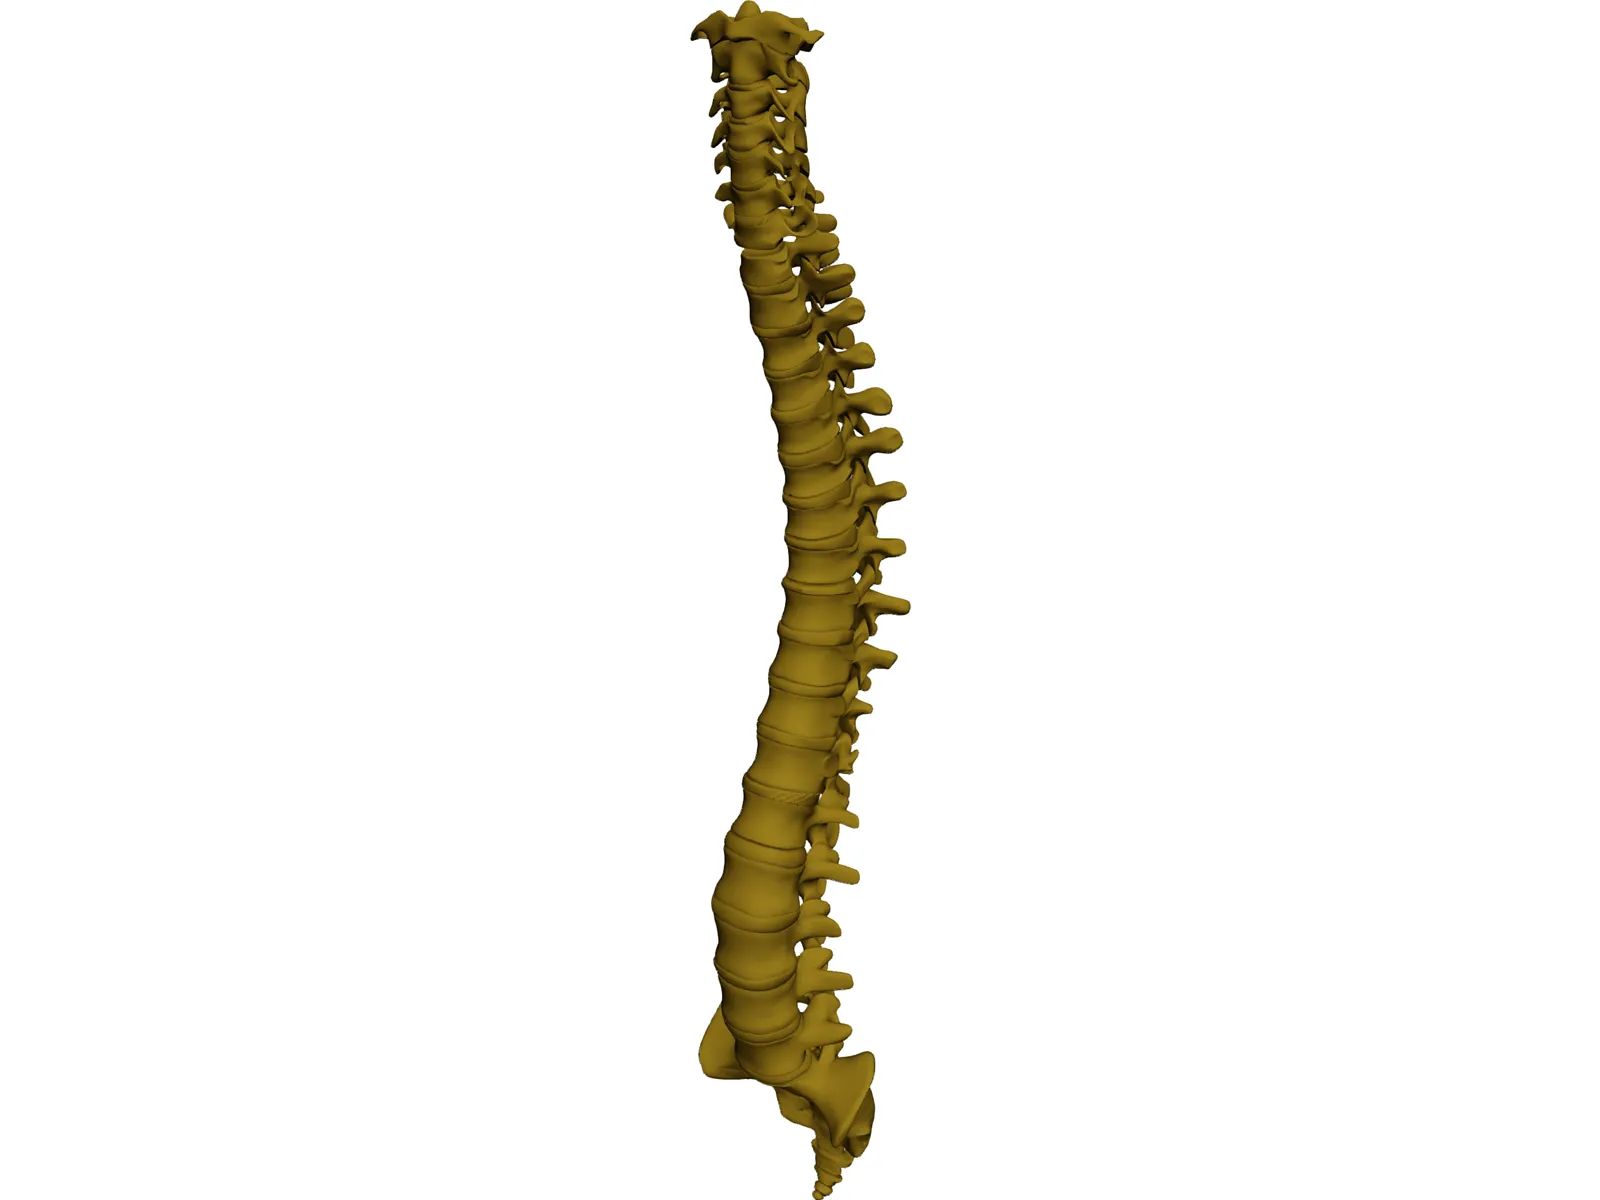 Human Spine 3D Model